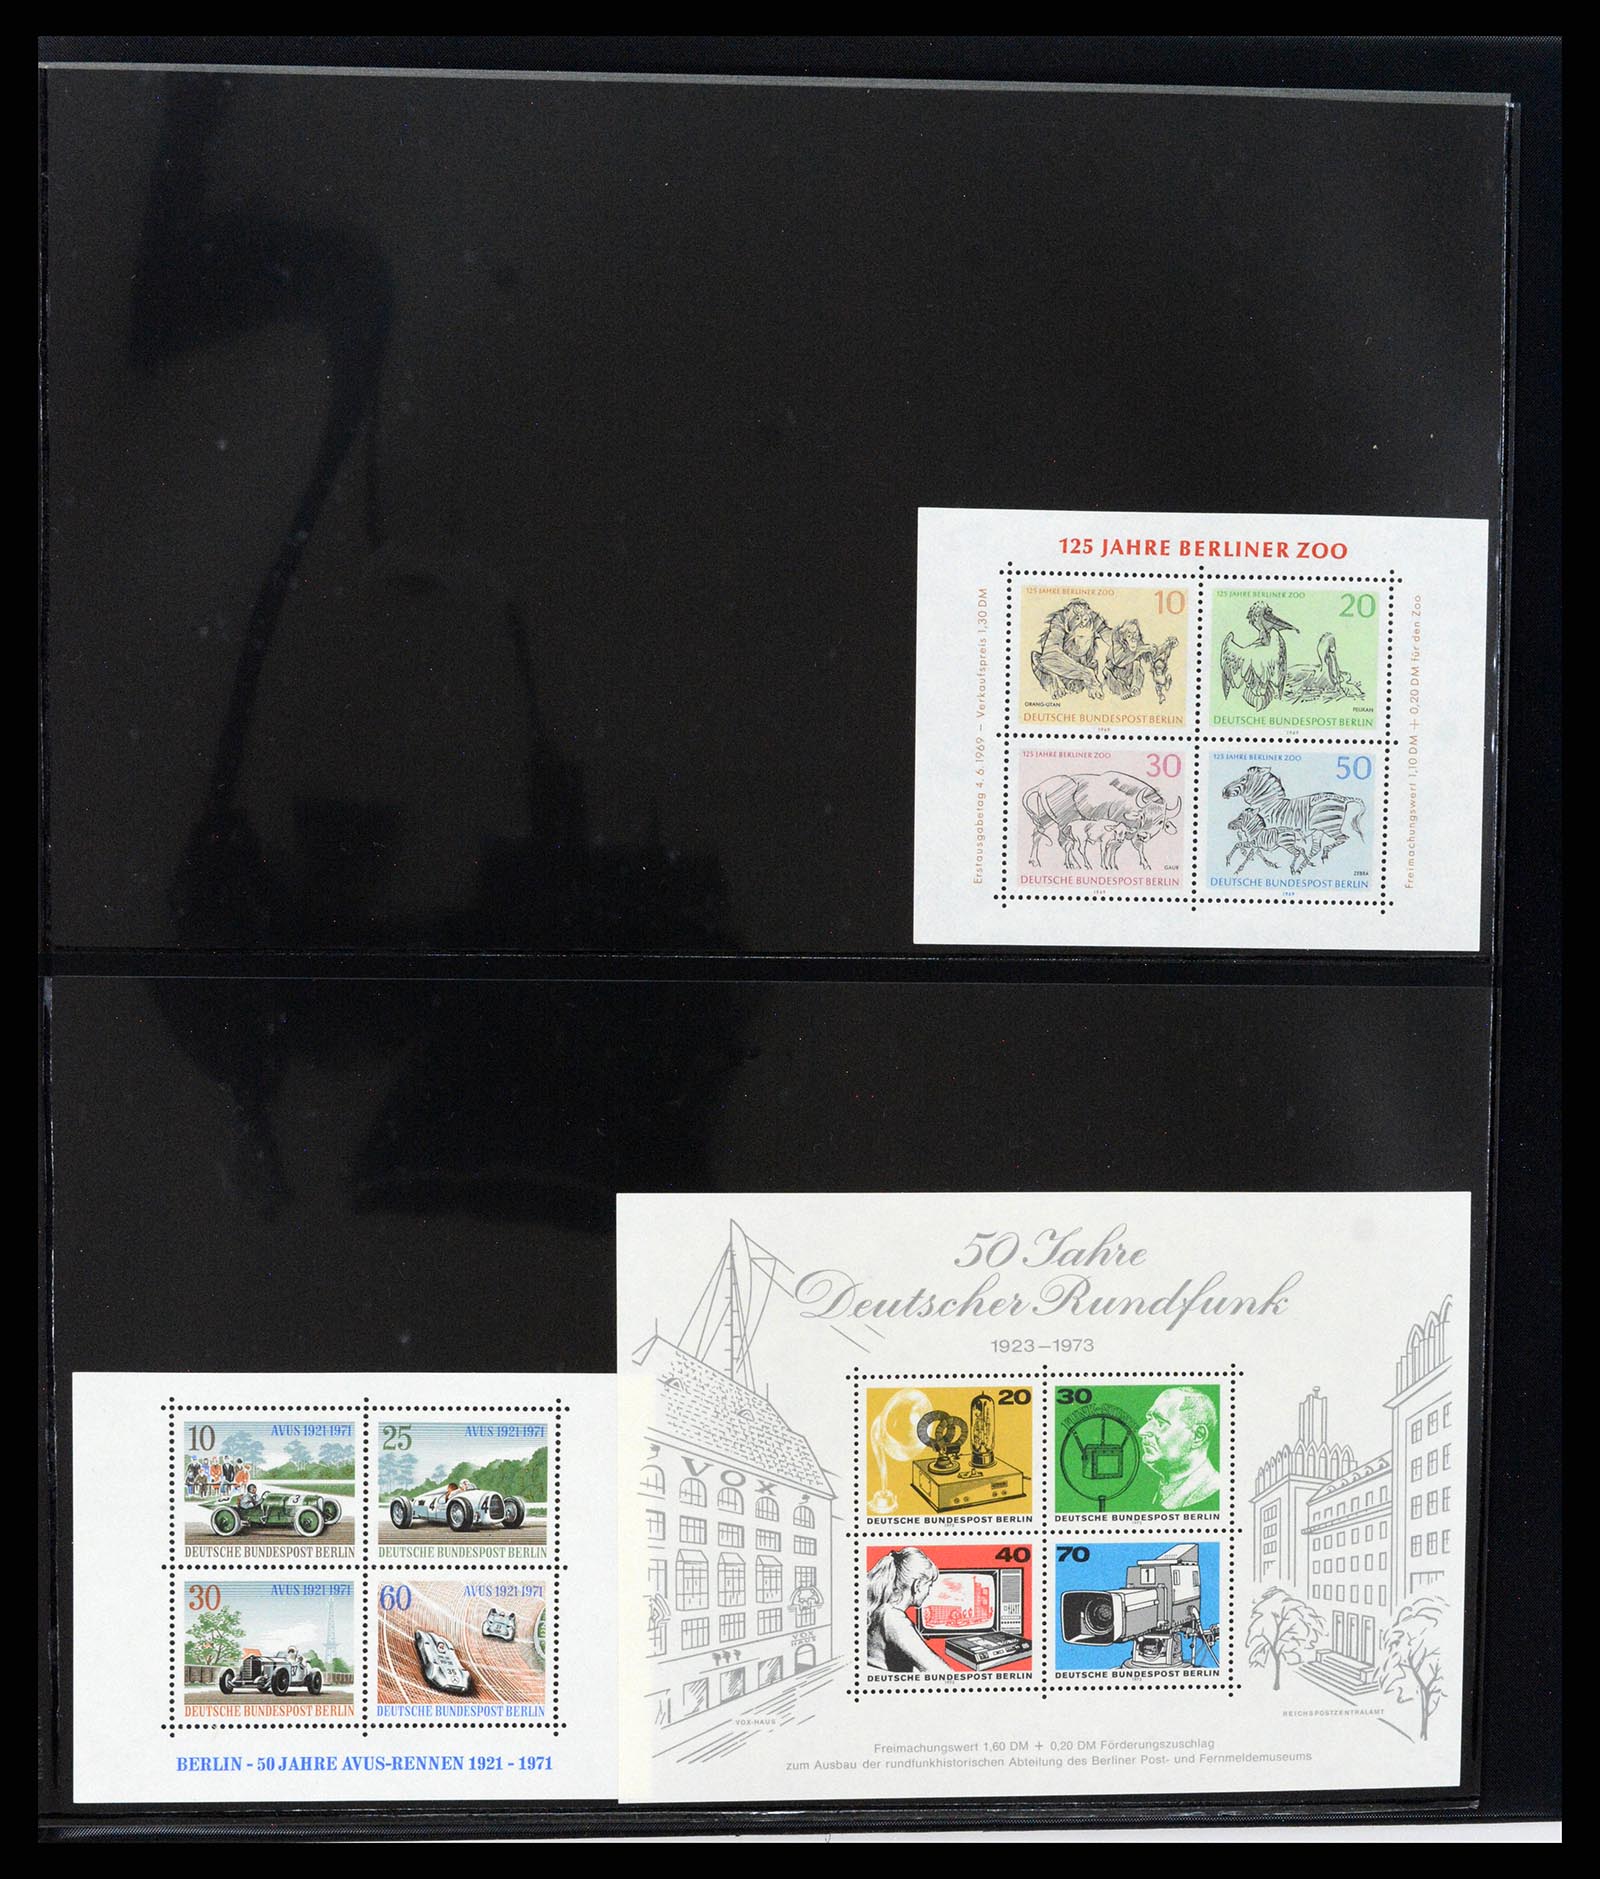 37345 051 - Stamp collection 37345 European countries souvenir sheets.